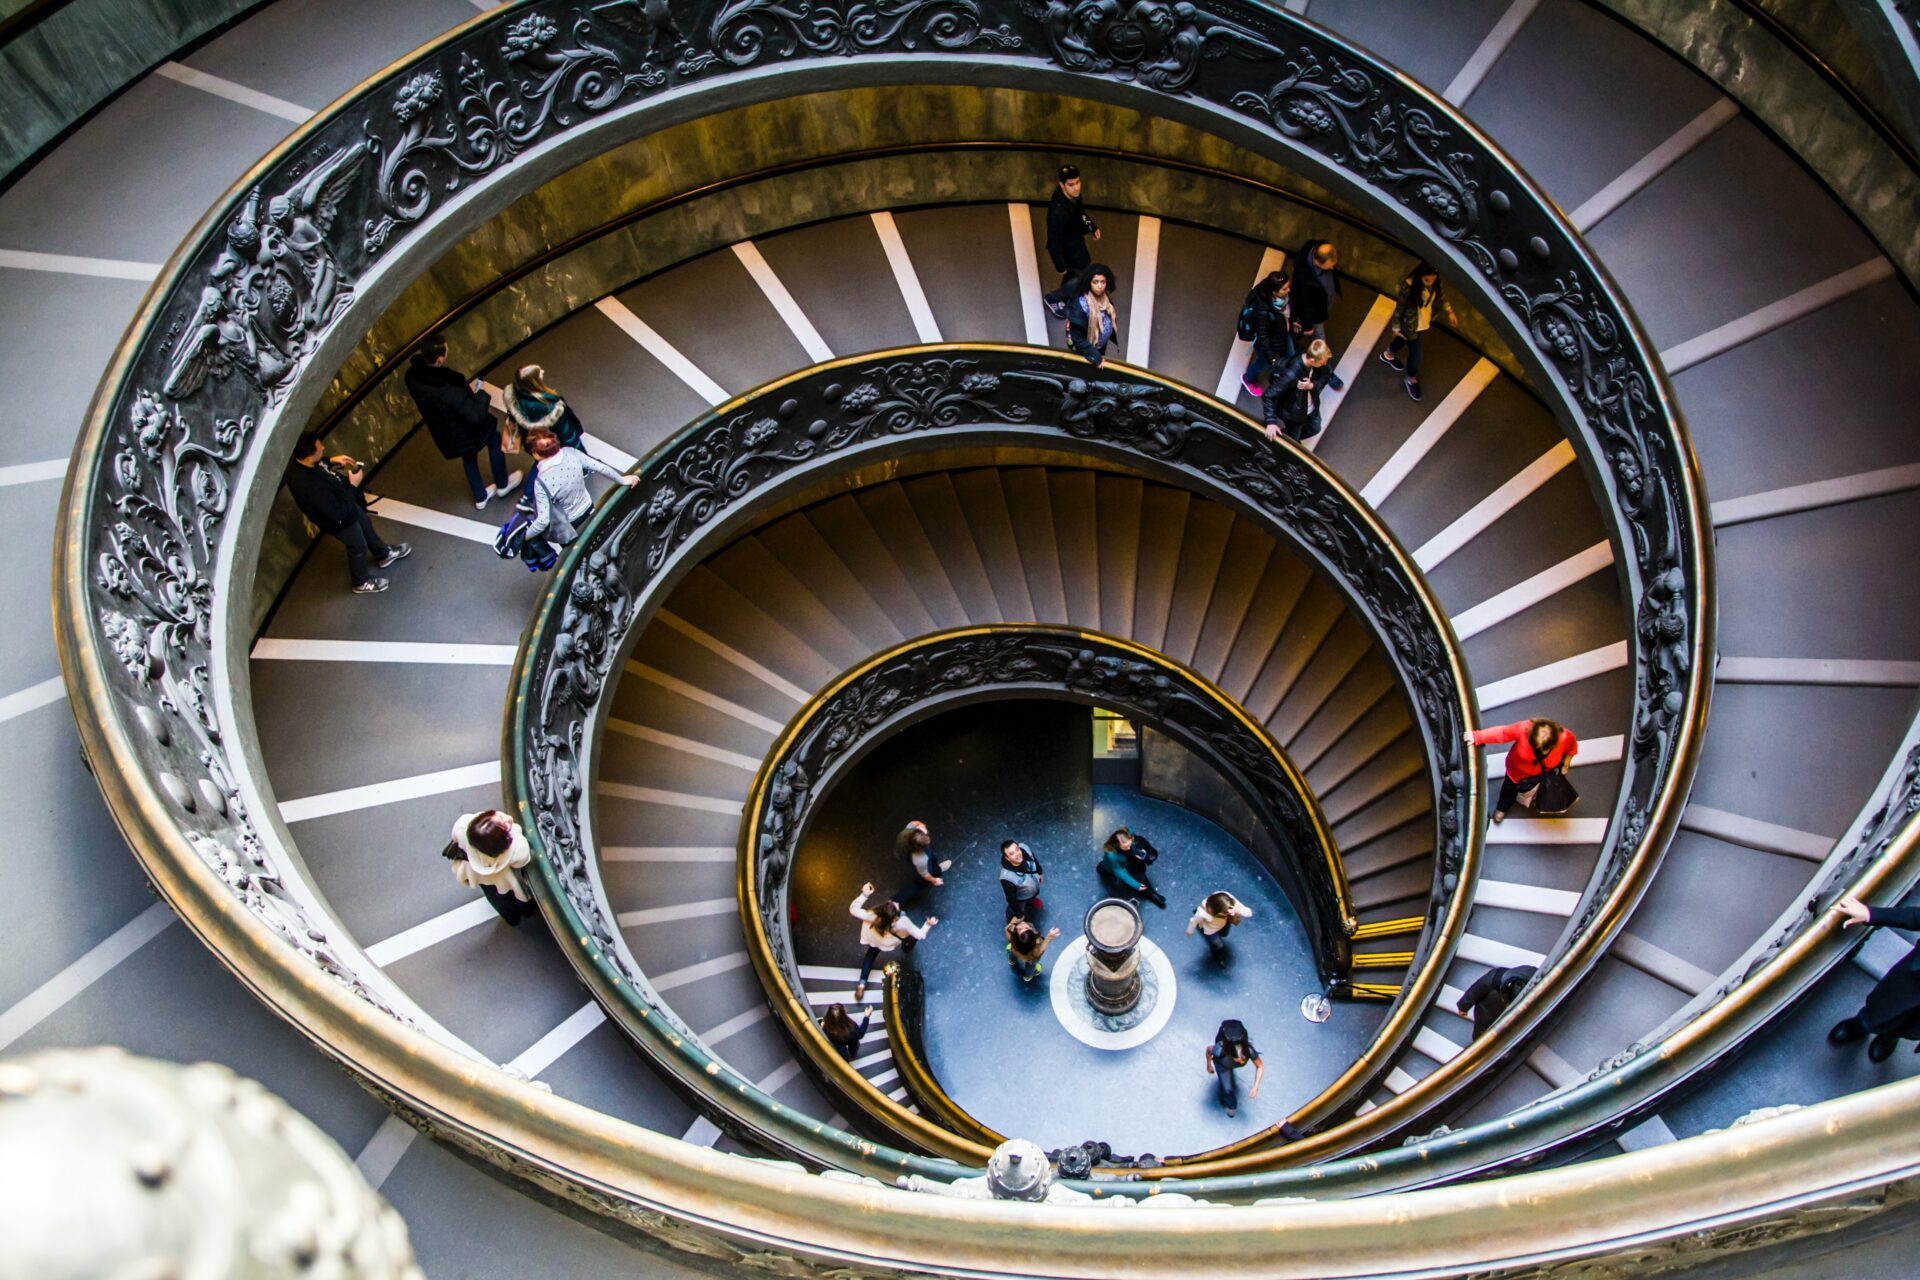 Il processo si svolge nella sala polivalente dei Musei Vaticani